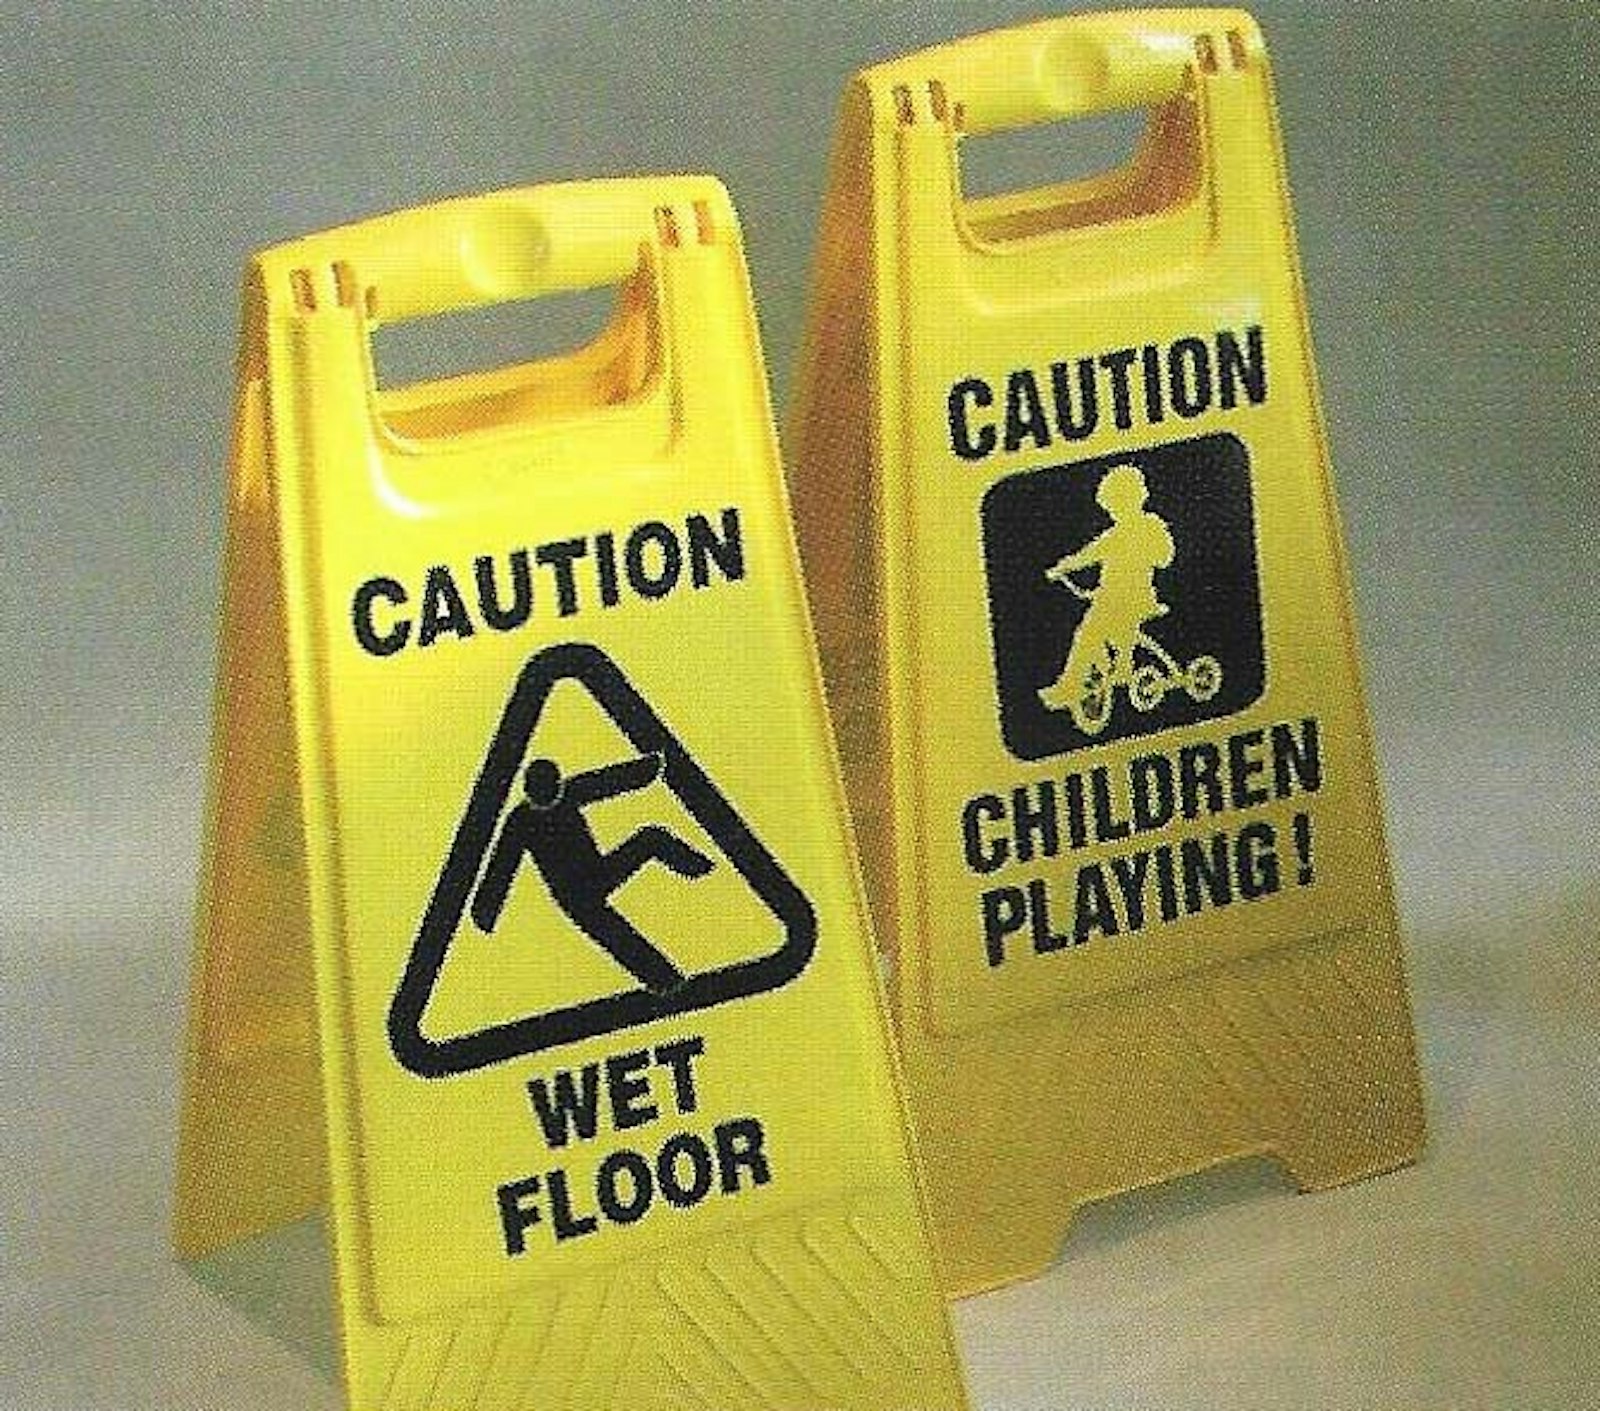 Safety Signs (1988), for Avmor Ltd.